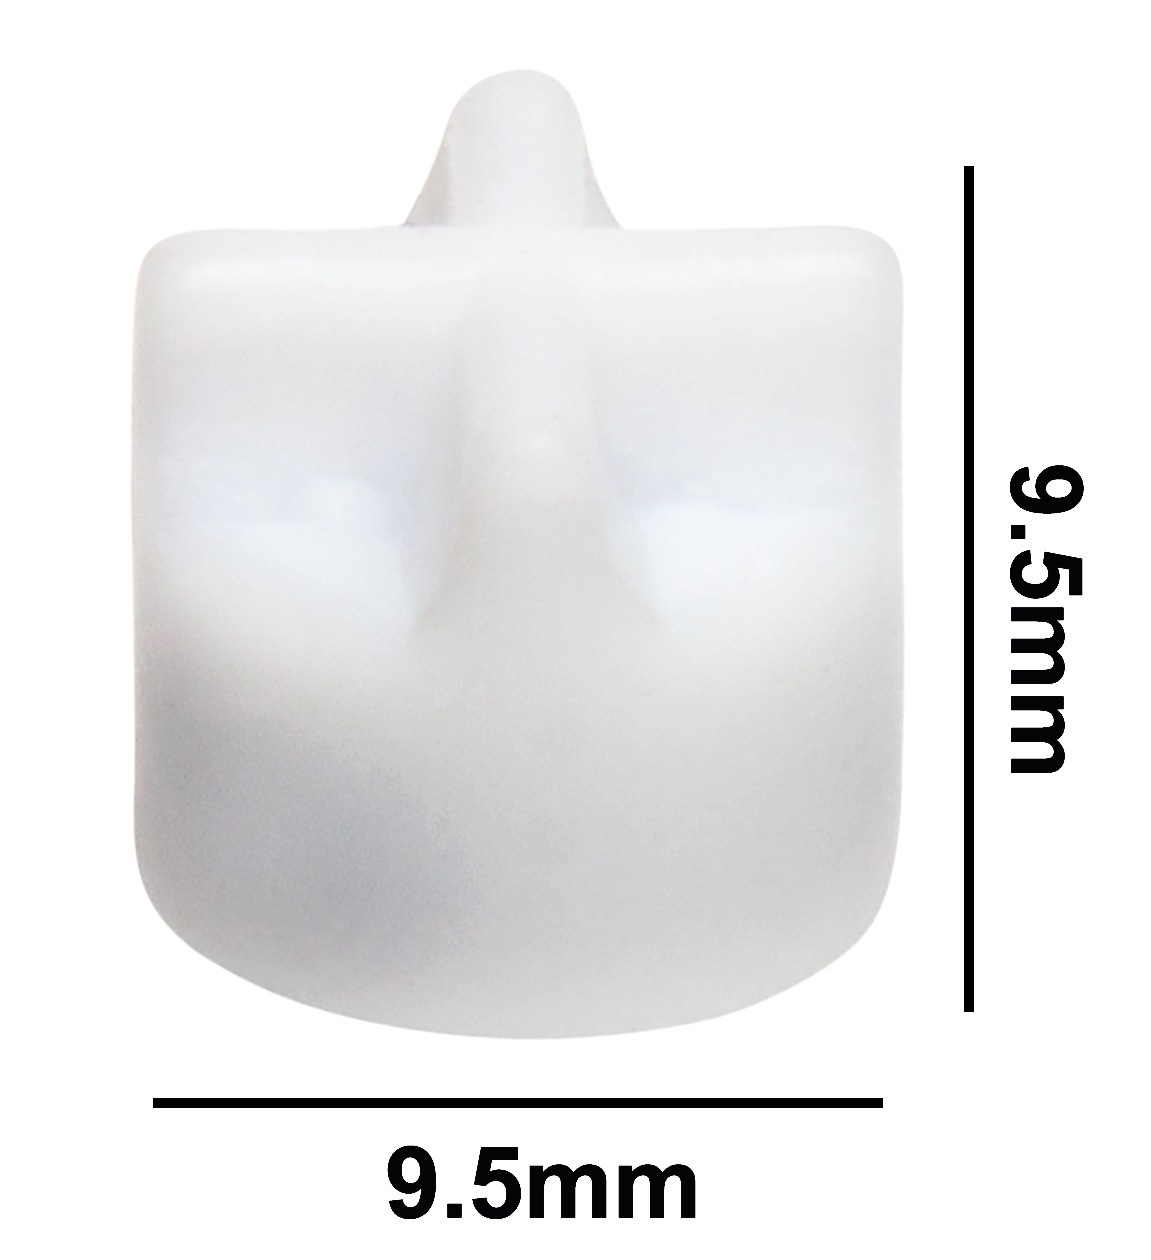 SP Bel-Art Spinfin Teflon Magnetic Stirring Bar; 9.5 x 9.5mm, White